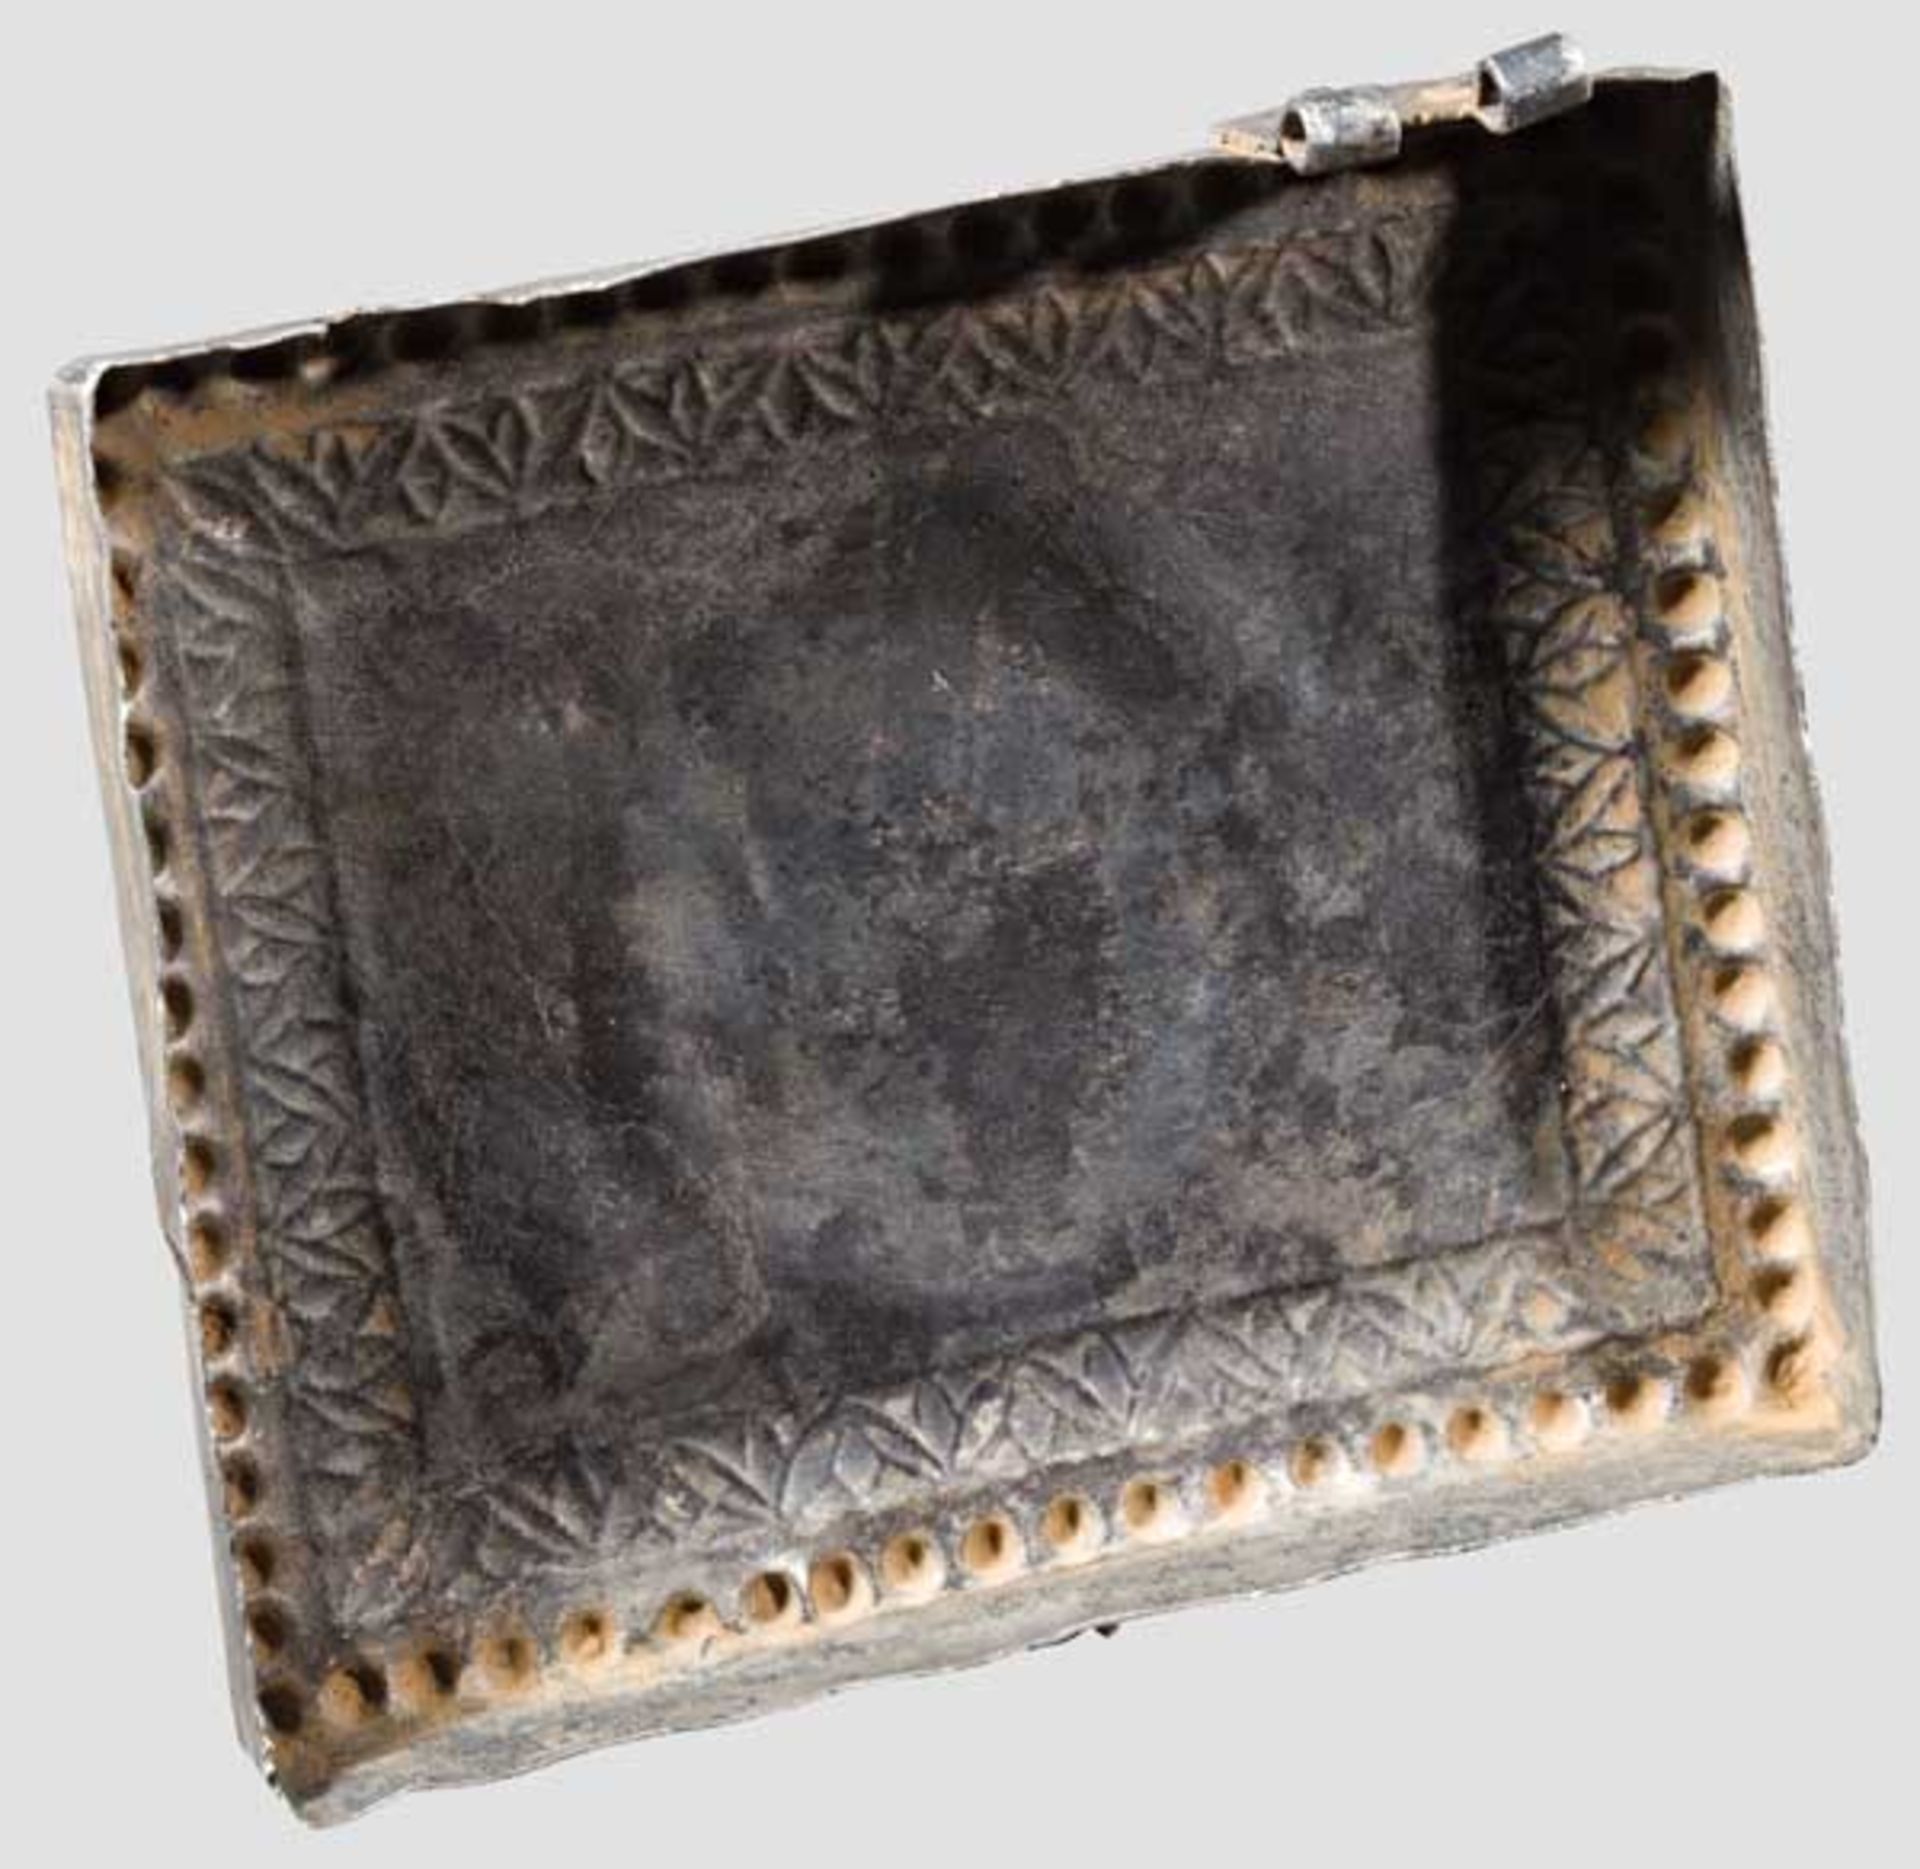 Deckel eines Silberreliquiars mit Christus-Kameo, frühbyzantinisch, 2. Hälfte 5. - frühes 6. Jhdt. - Bild 3 aus 3